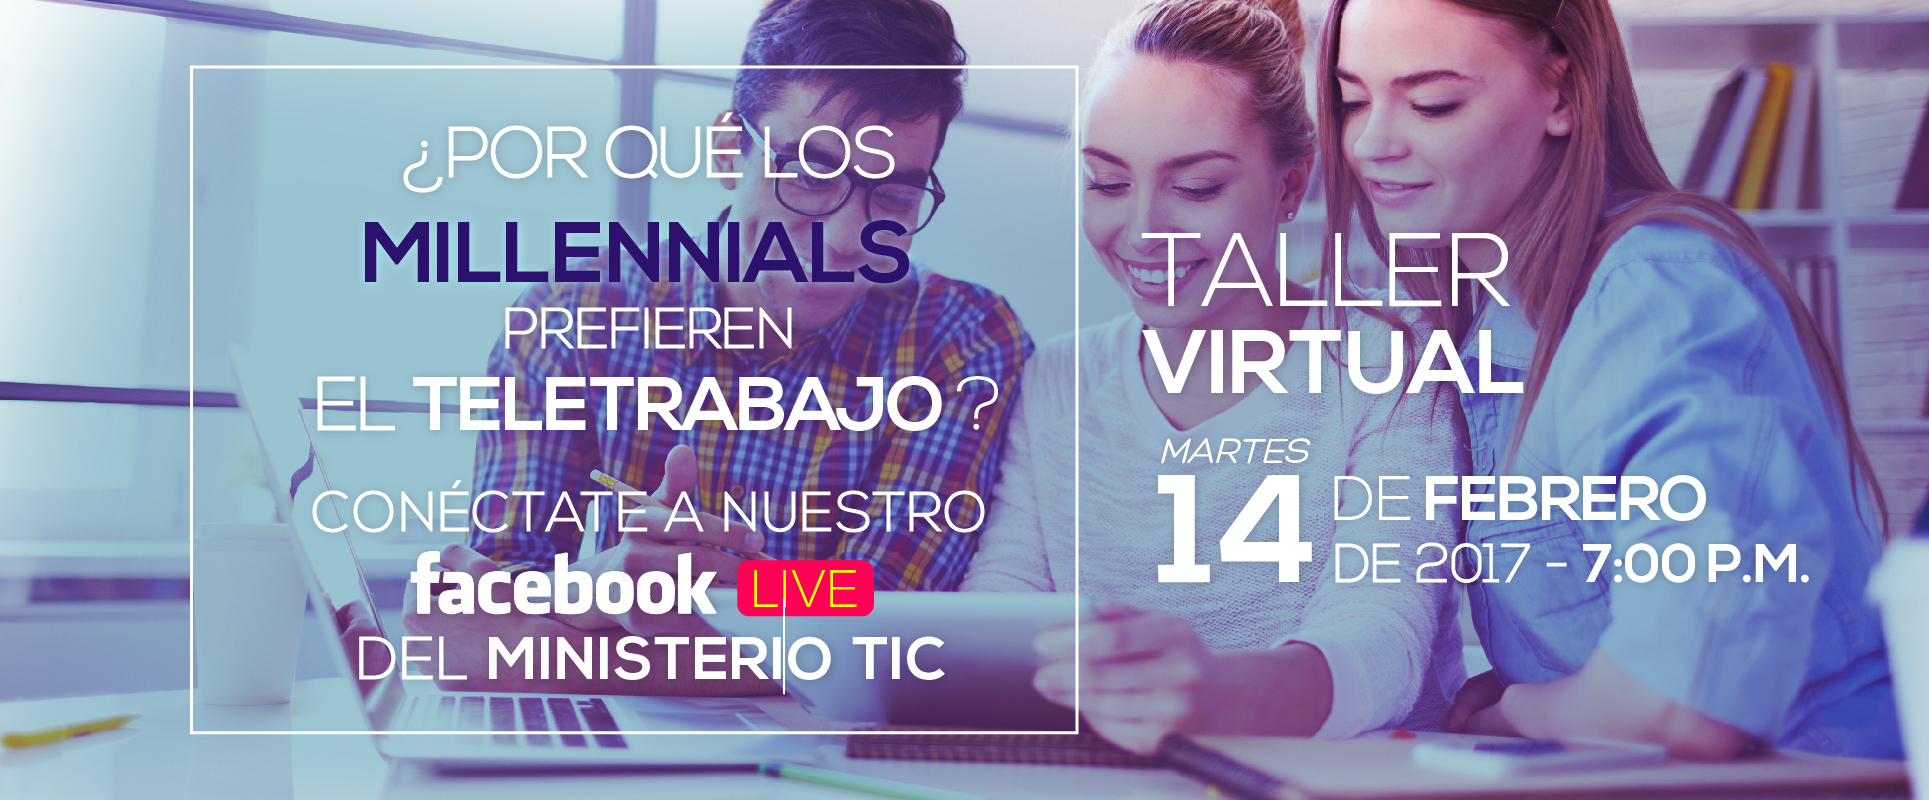 Participe en el Taller virtual de Teletrabajo este 14 de febrero